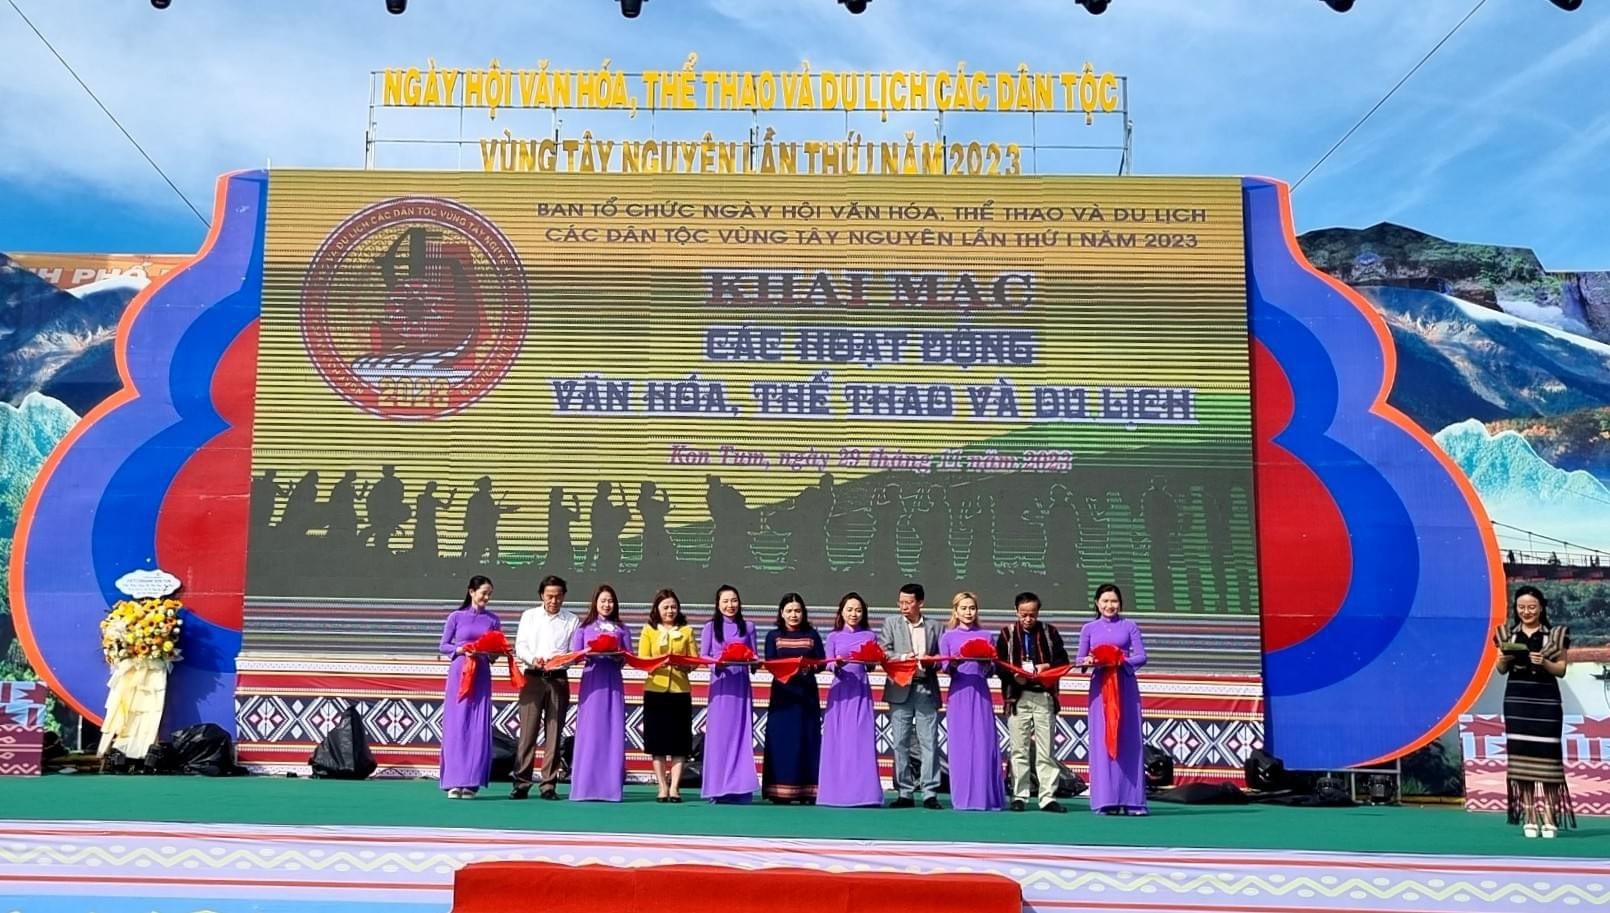 Các đại biểu cắt băng khai mạc các hoạt động chung Ngày hội các dân tộc vùng Tây Nguyên lần thứ I tại Kon Tum.